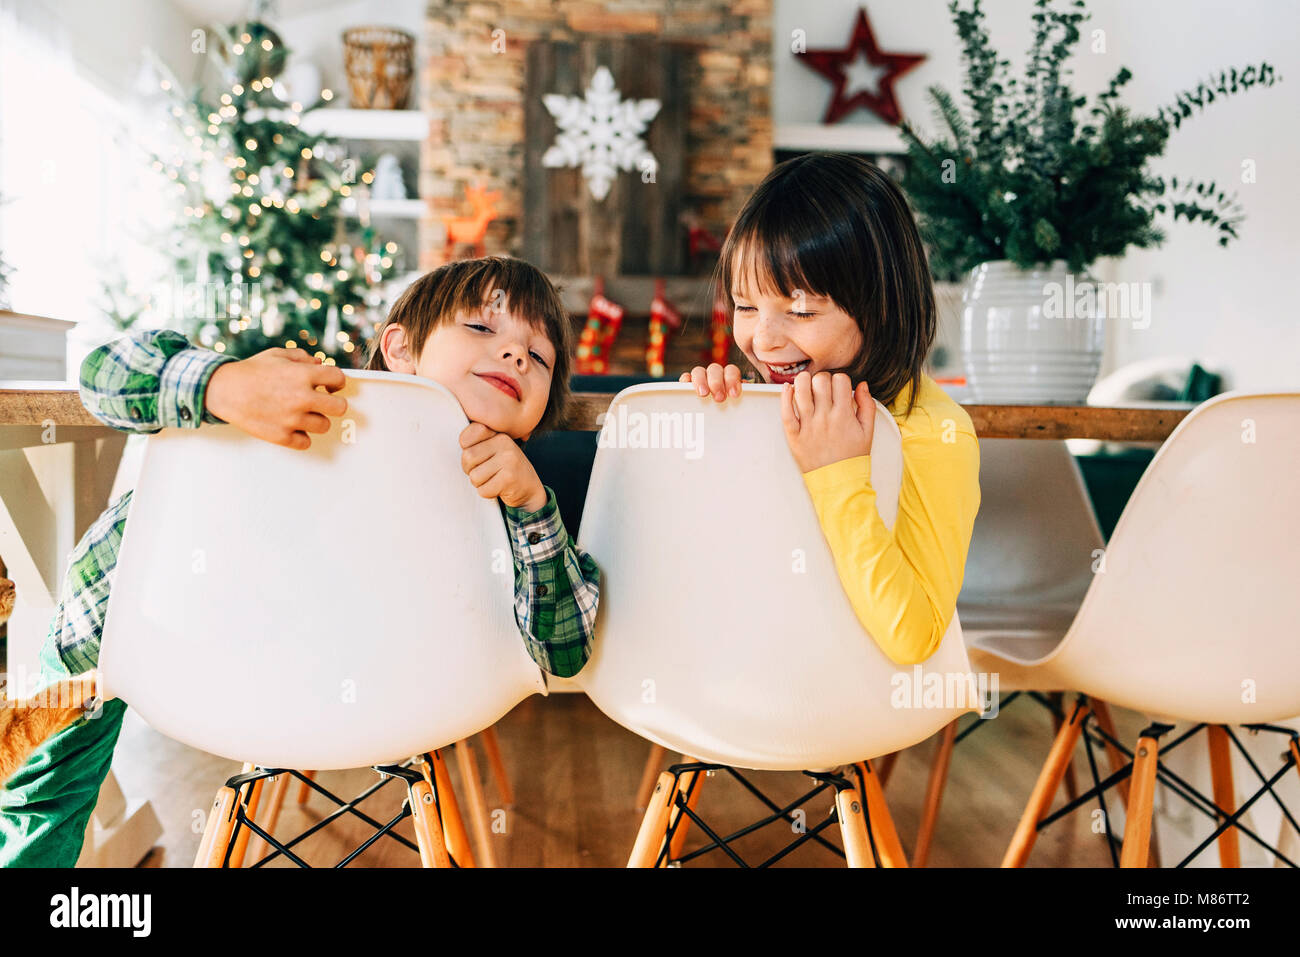 Chico y chica sentada en la mesa del comedor jugando en Navidad Foto de stock